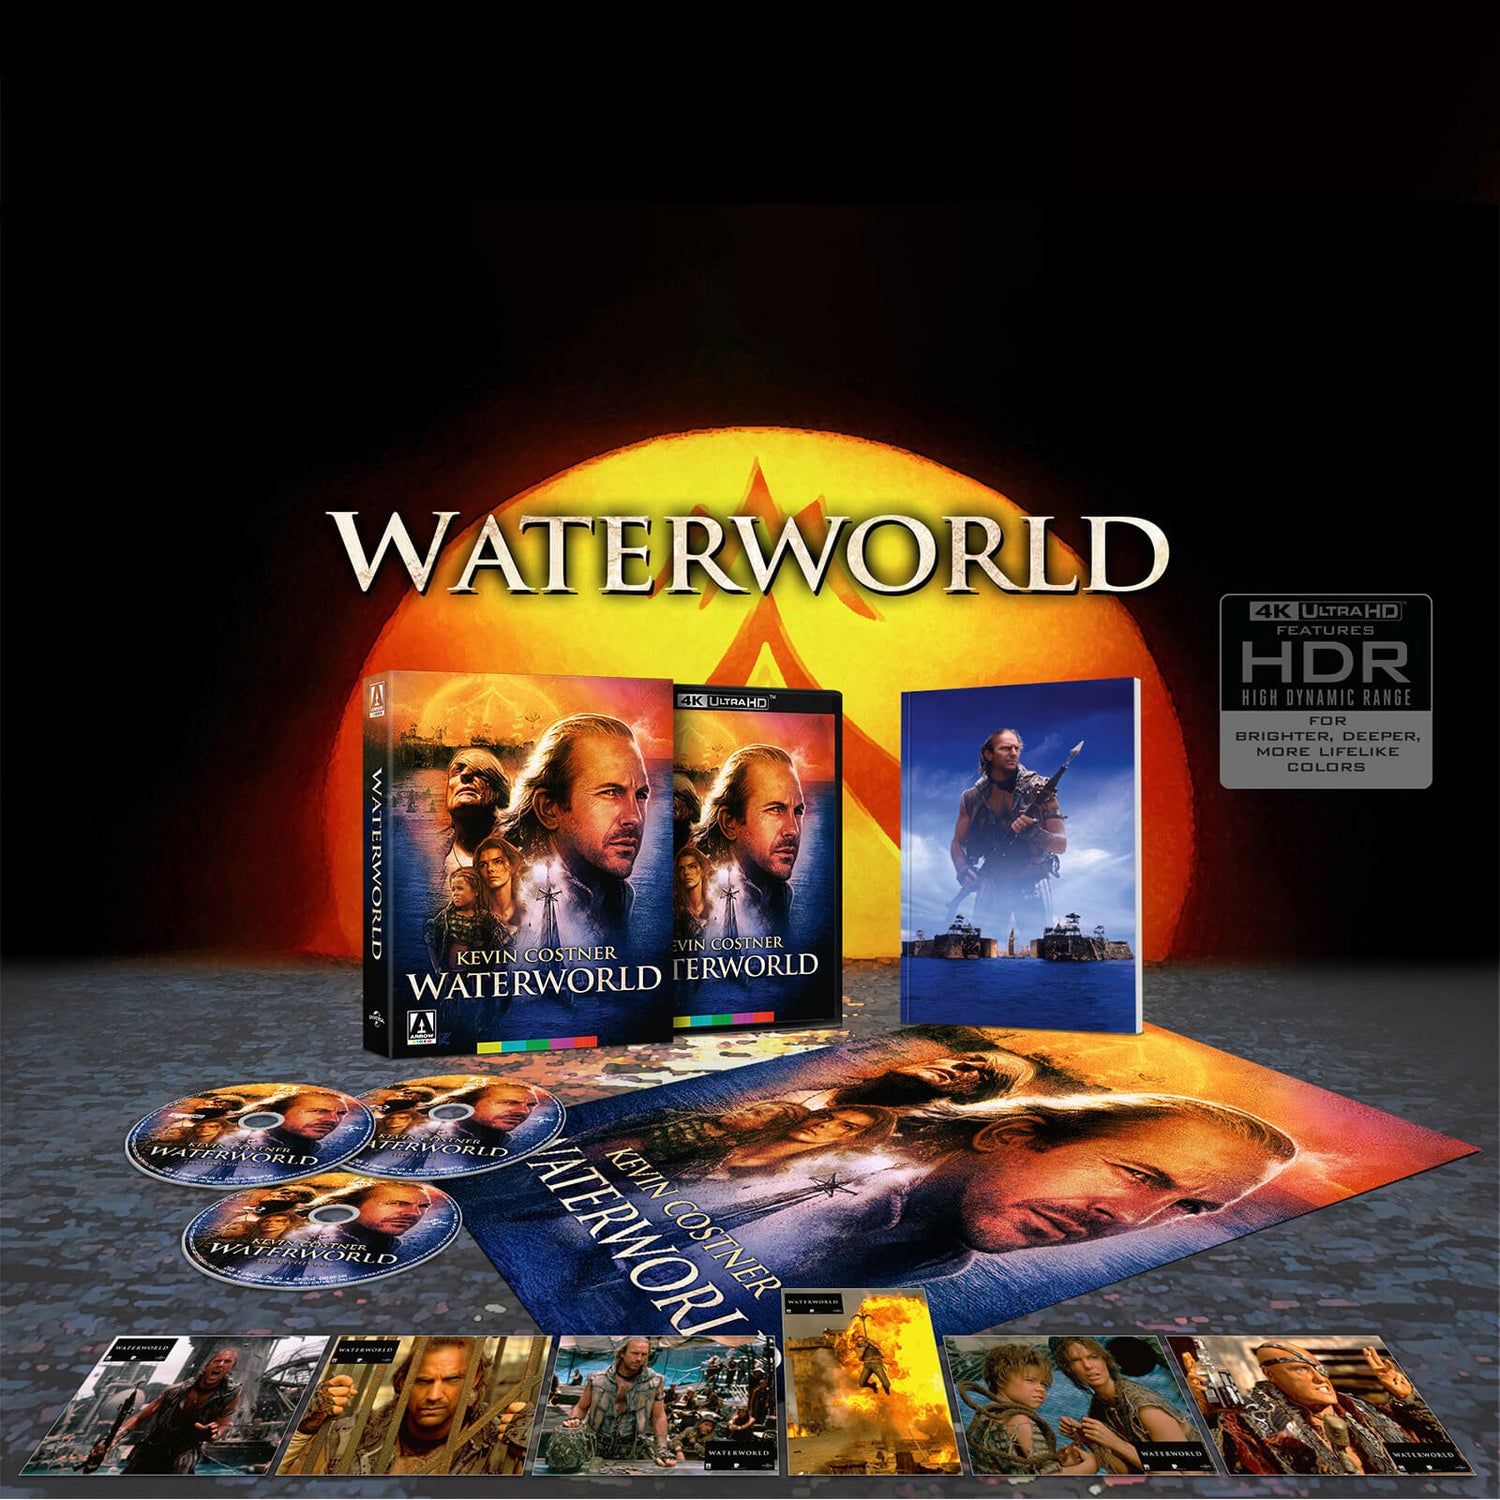 Interpunctie Buitenlander mout Waterworld Limited Edition 4K Ultra HD | Arrow Video US